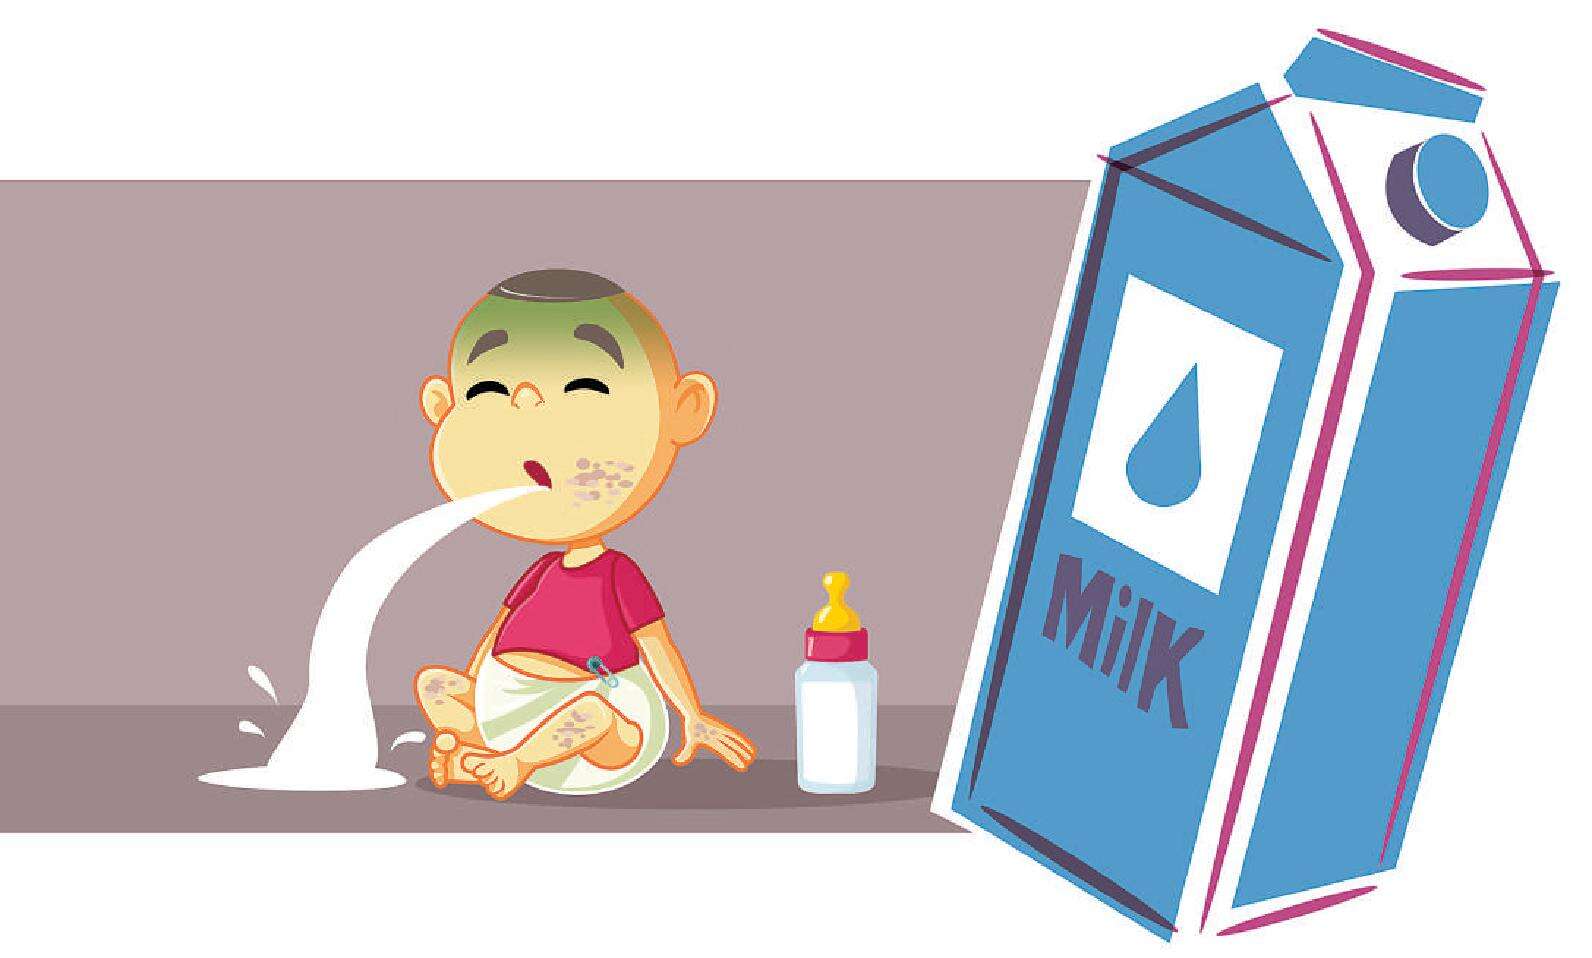 牛奶严重过敏可危及儿童生命